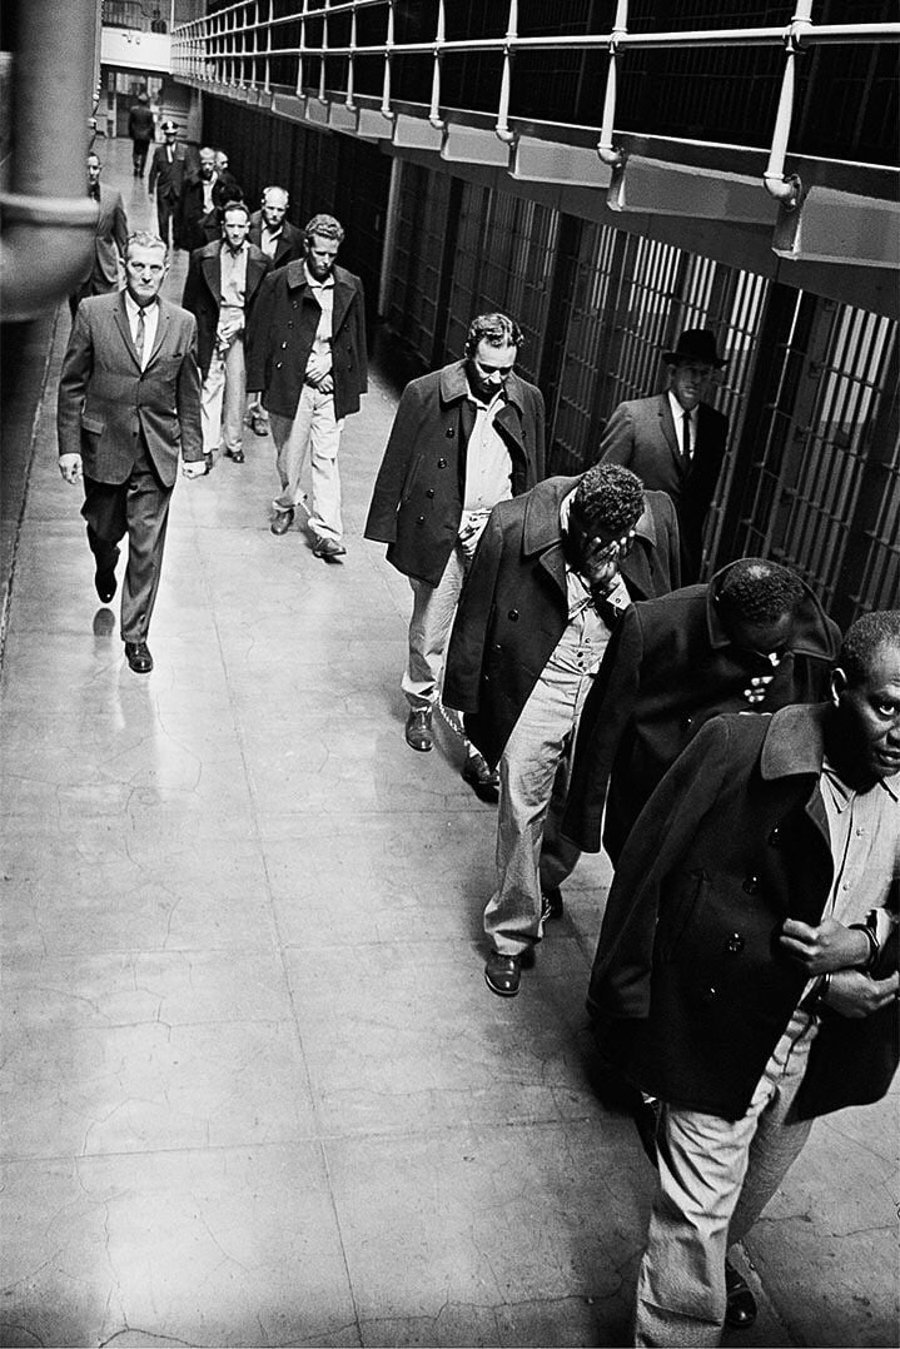 האסירים האחרונים במתקן הכליאה המפורסם 'אלקטרז' בארה"ב, מועברים לכלא אחר, לאחר שהממשל החליט שתפעול המתקן יקר מדי. 1963